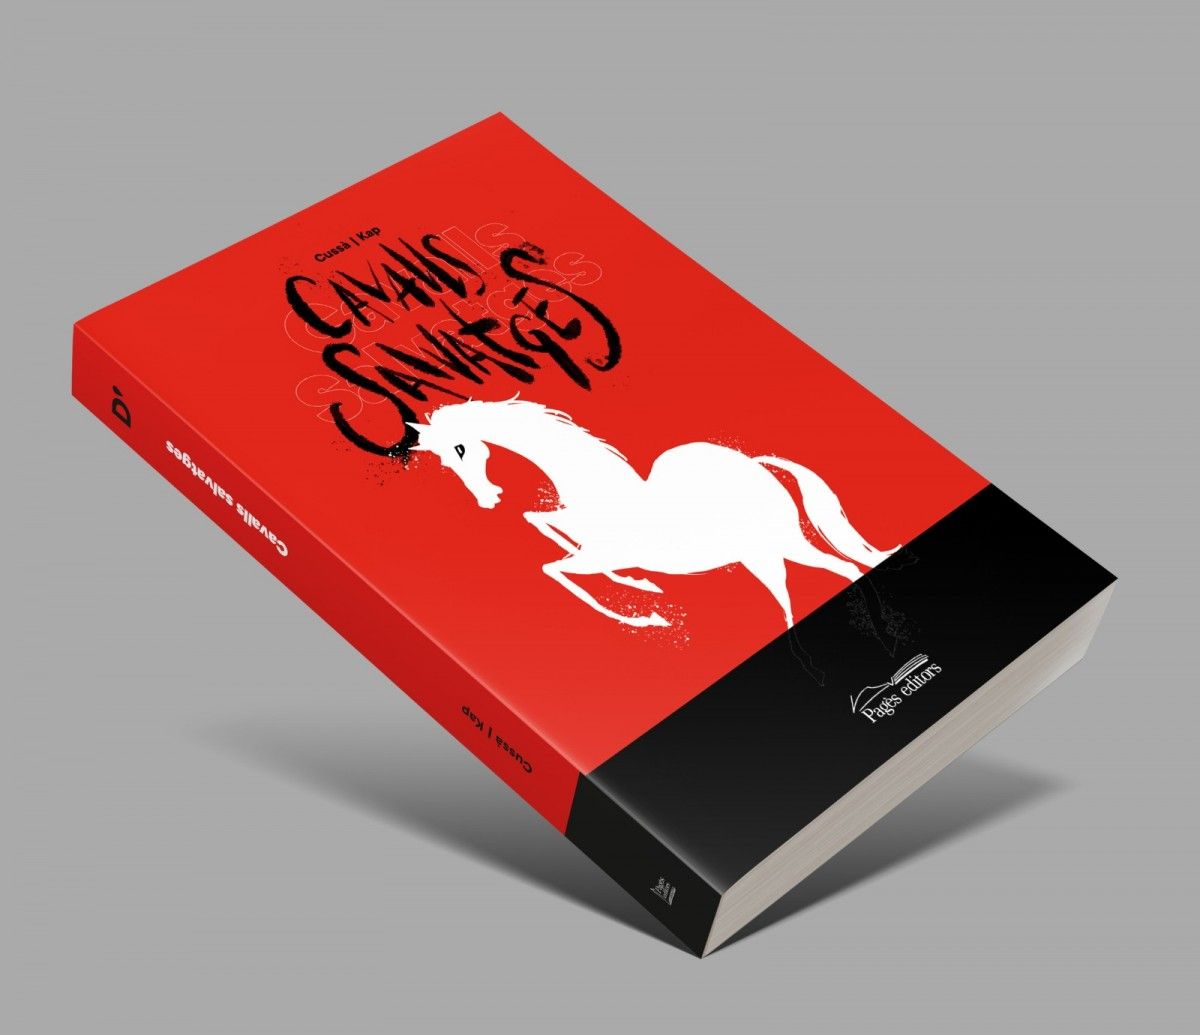 Cavalls salvatges, de Jordi Cussà i Jaume Capdevila